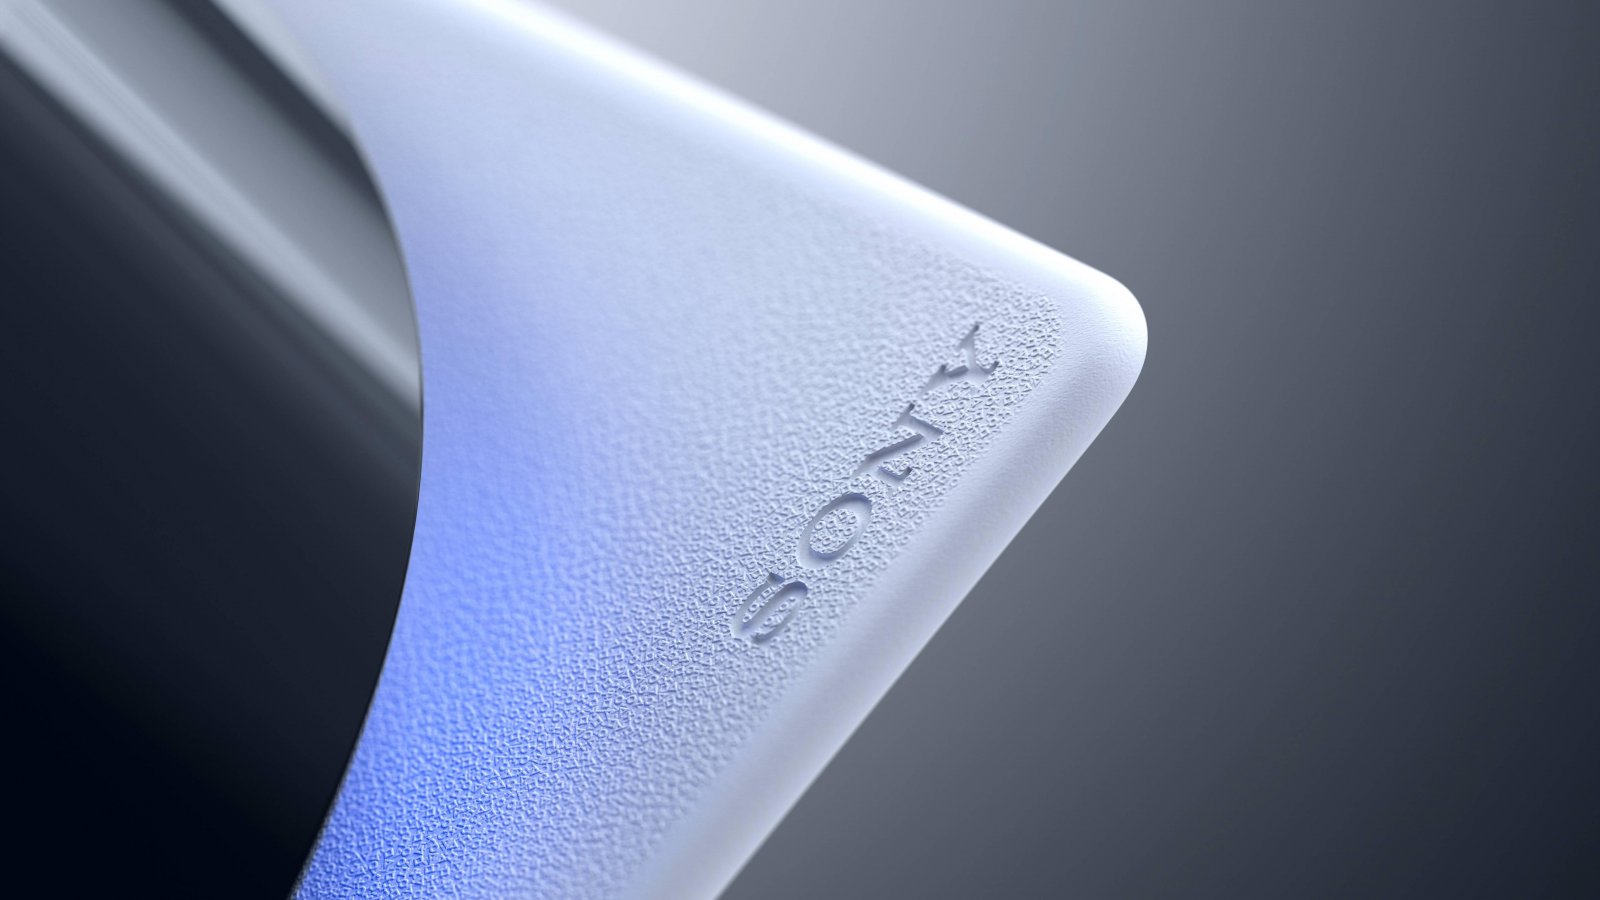 Un dettaglio della console PS5 che mostra la scritta Sony sulla plastica bianca